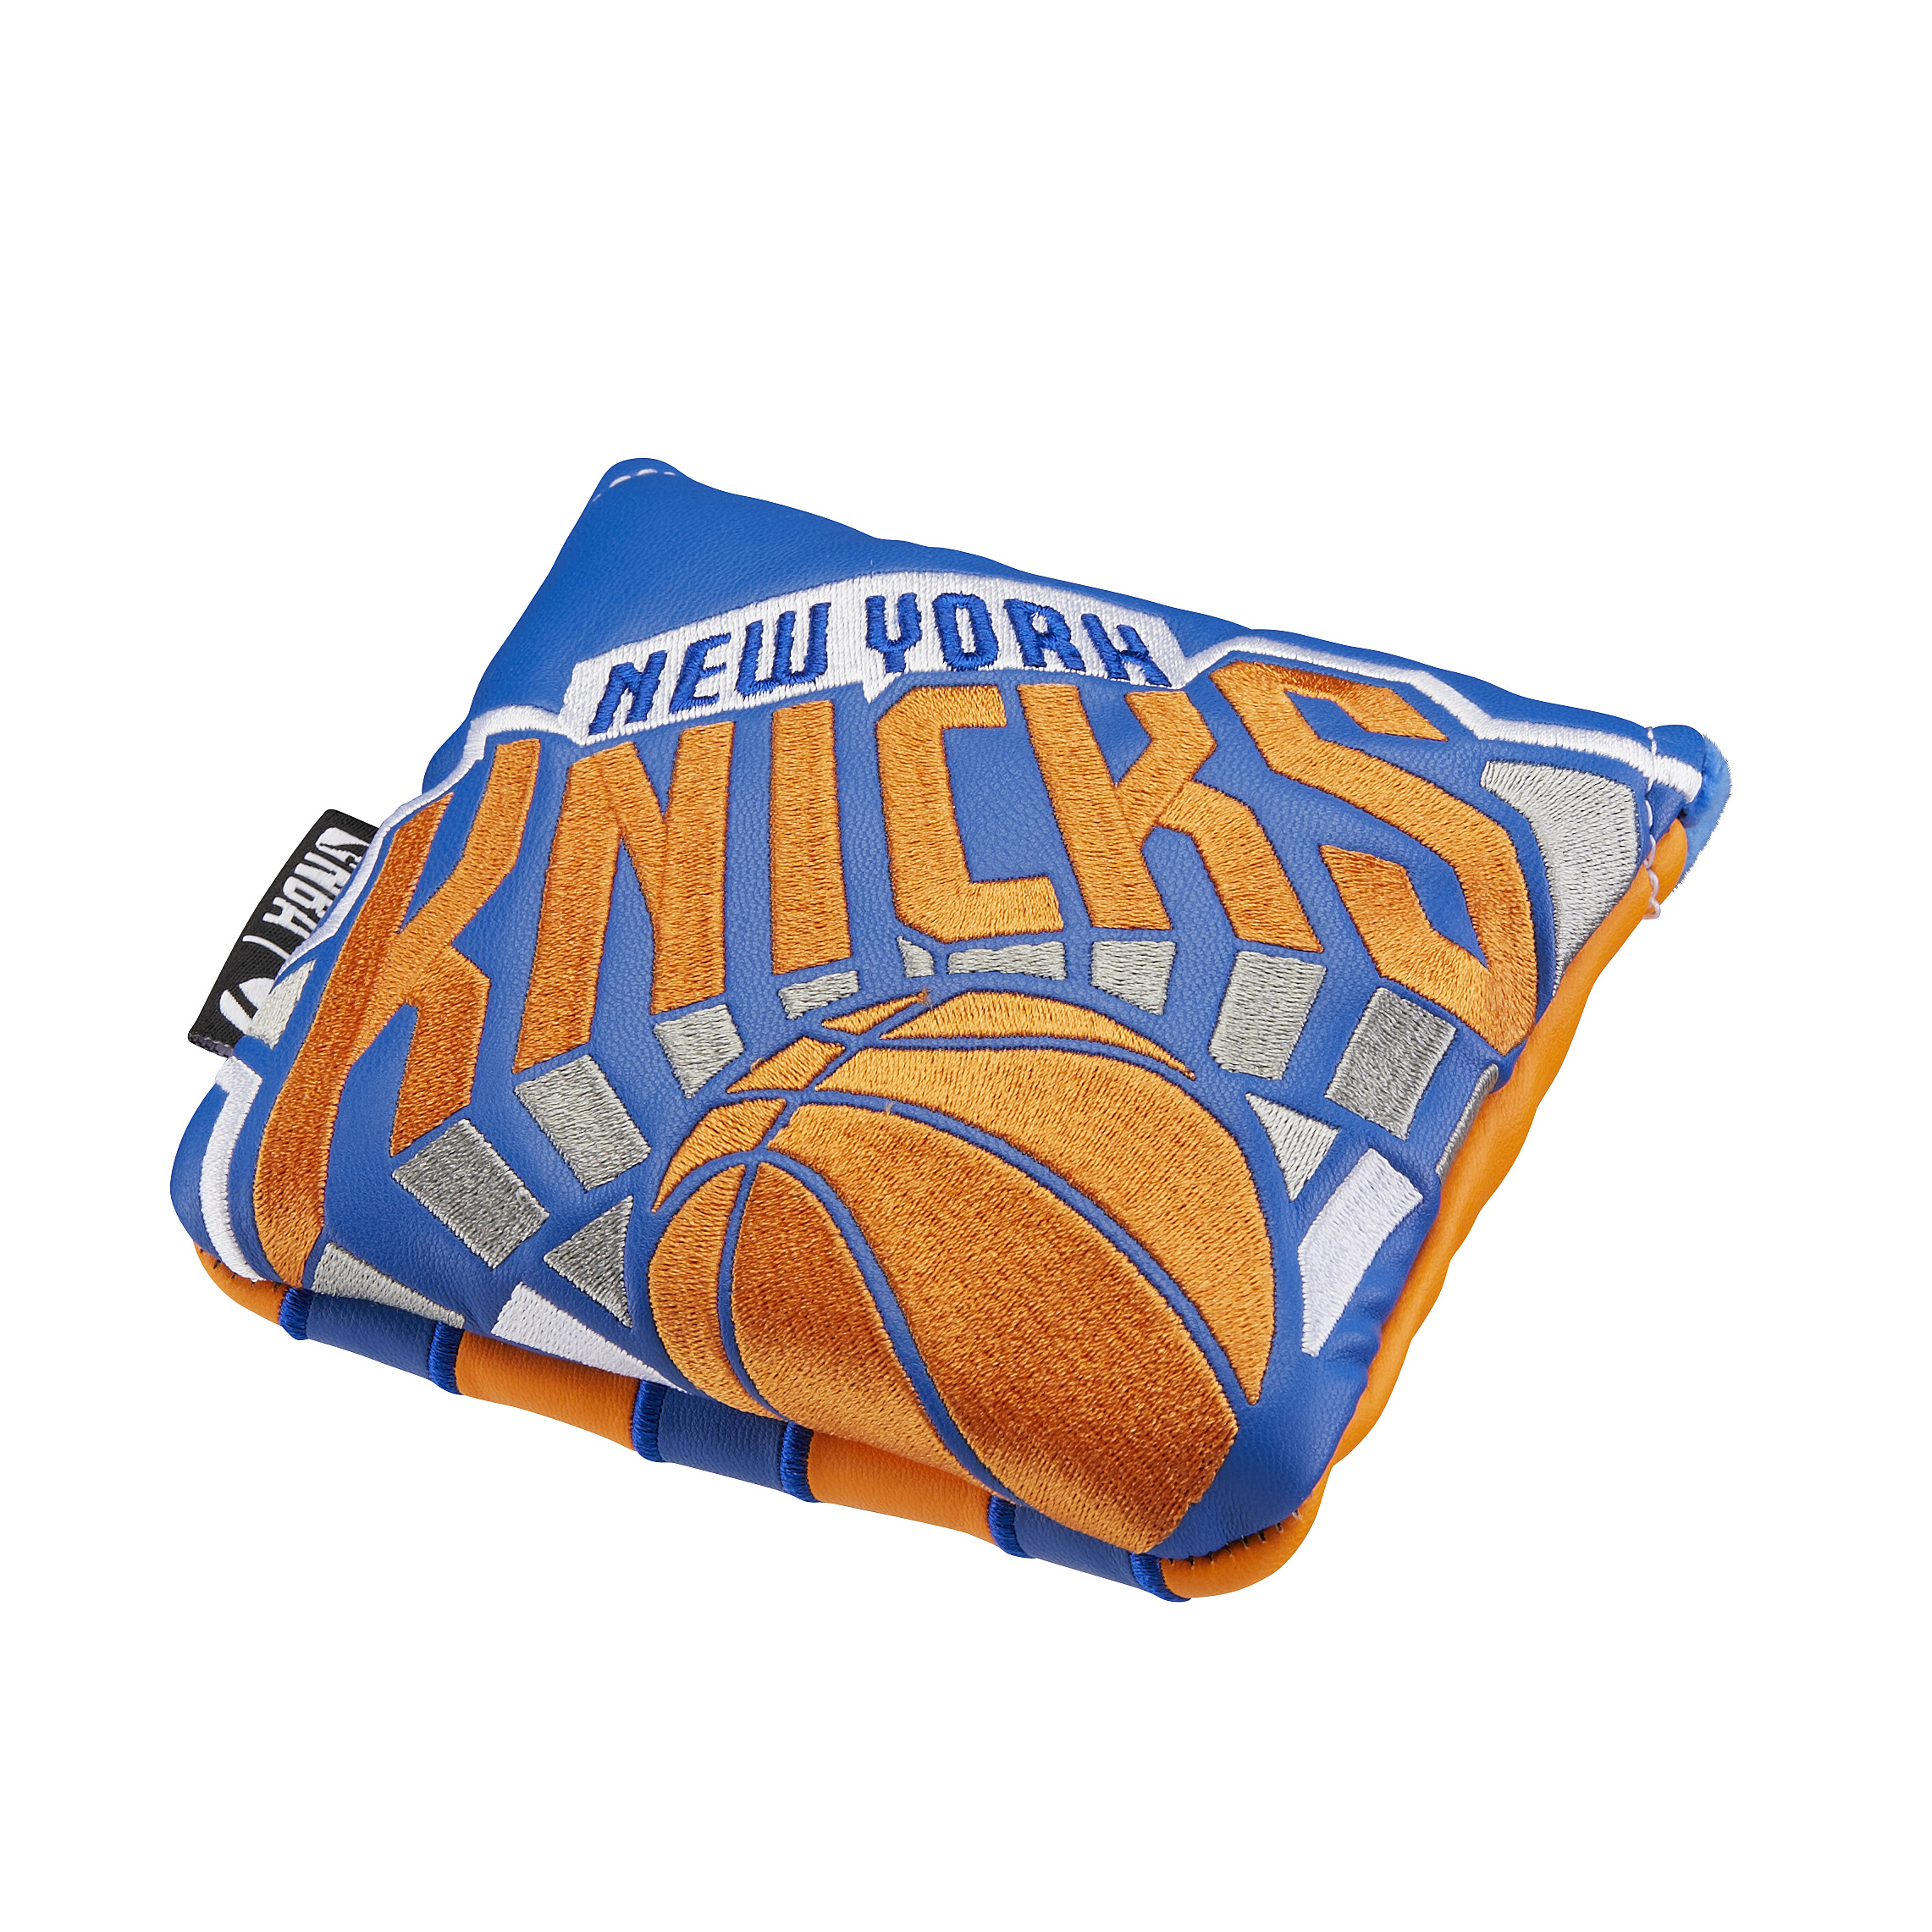 New York Knicksスパイダーヘッドカバー /の大画像